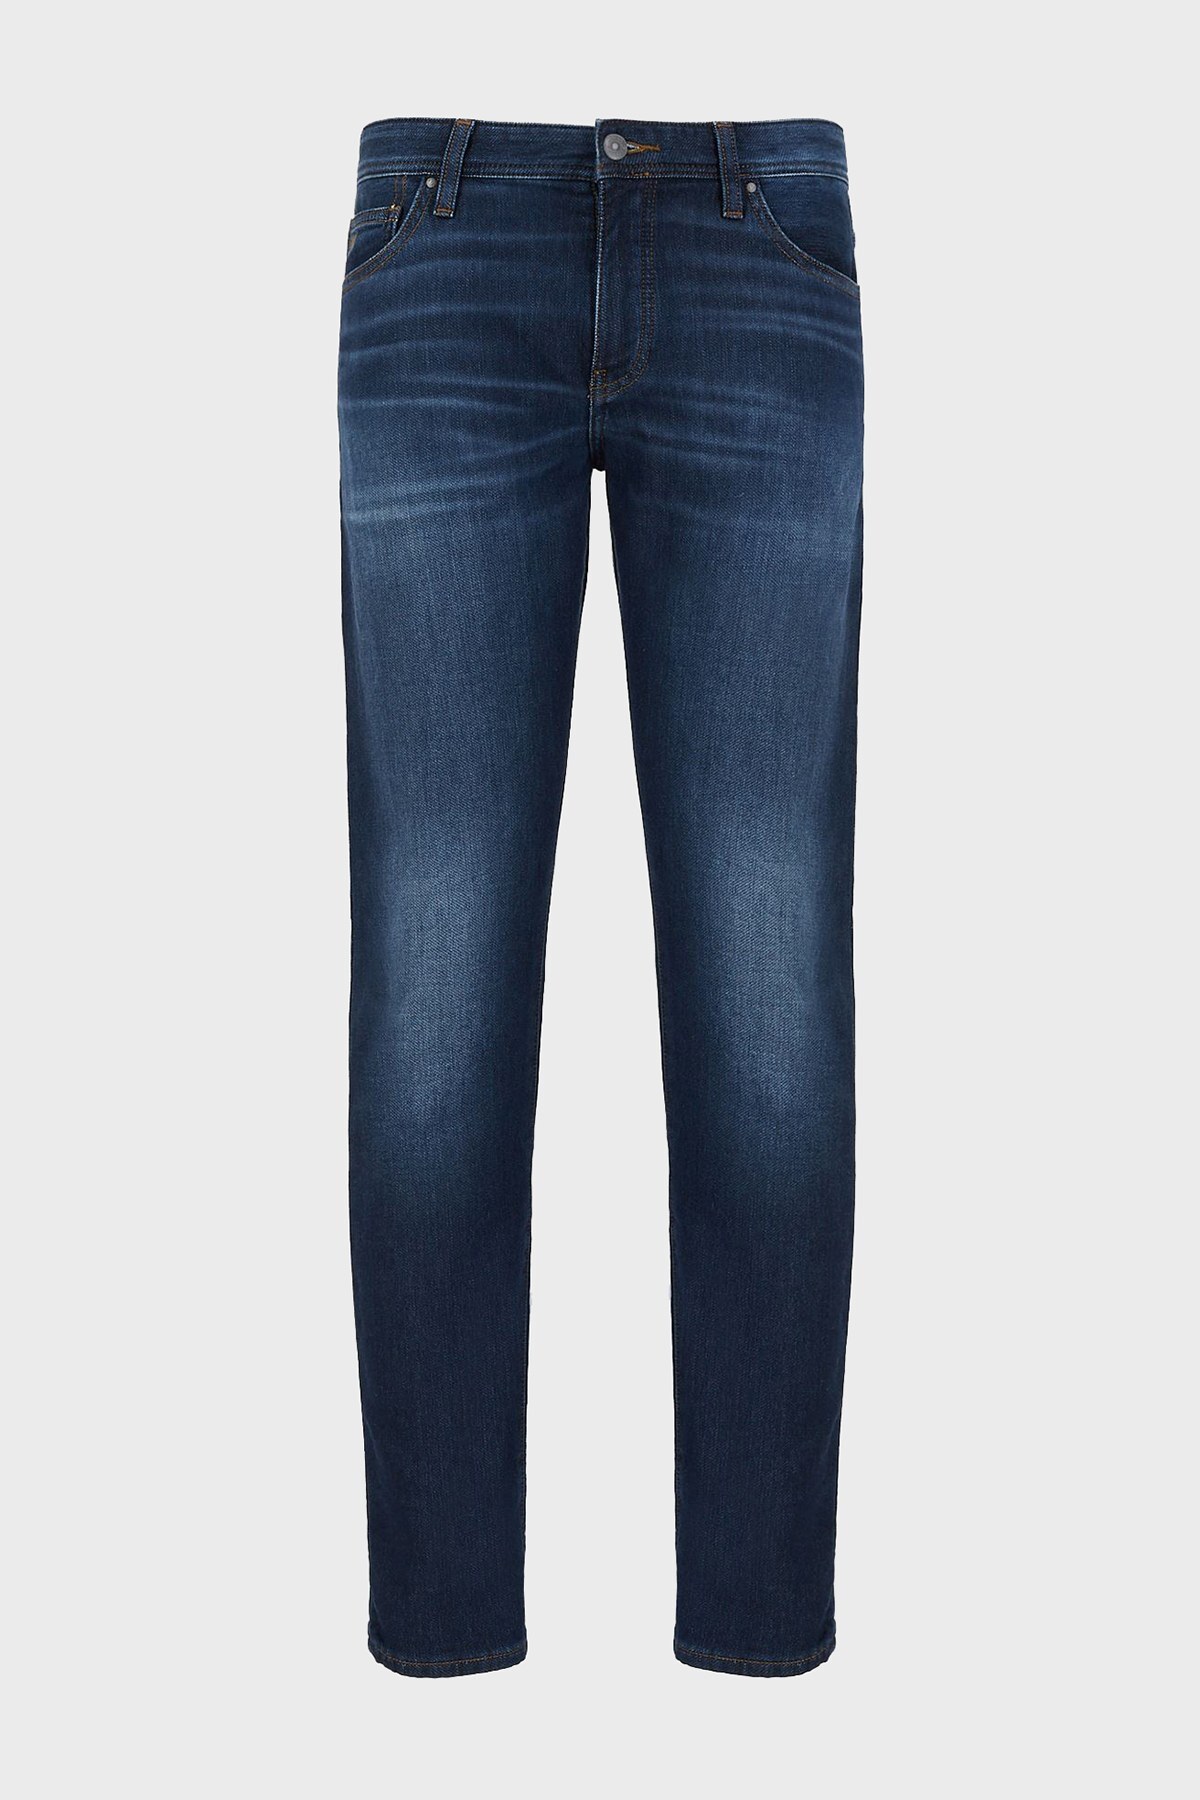 Armani Exchange Pamuklu Slim Fit J14 Jeans Erkek Kot Pantolon 6KZJ14 Z2P6Z 1500 LACIVERT